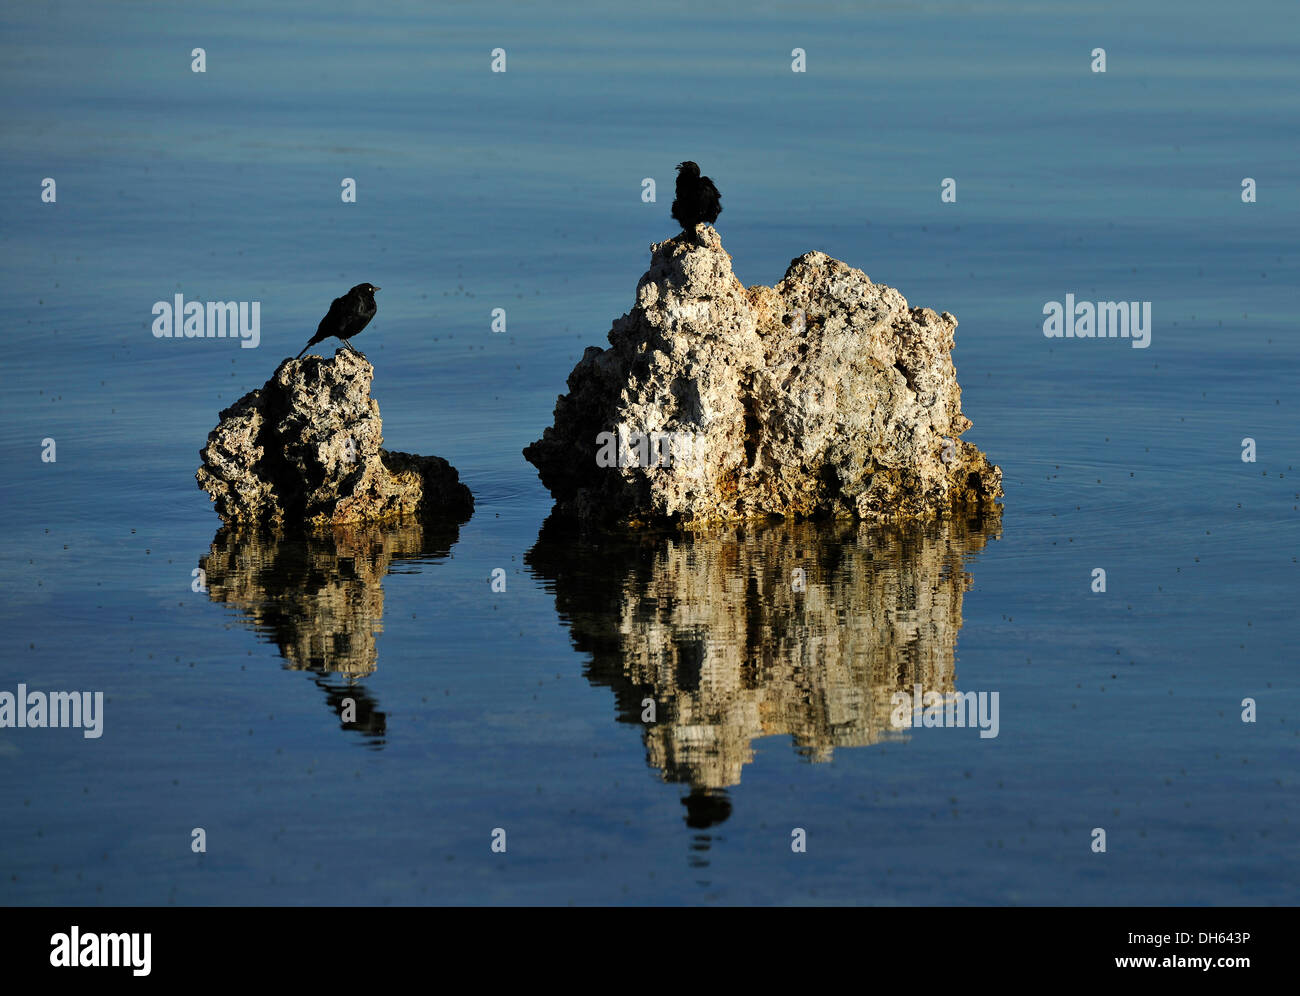 Uccelli e Riva vola (Ephydra hians), tufo, calc-tufo formationss, Mono lago, una soluzione salina lago di soda, Sud Area di tufo Foto Stock